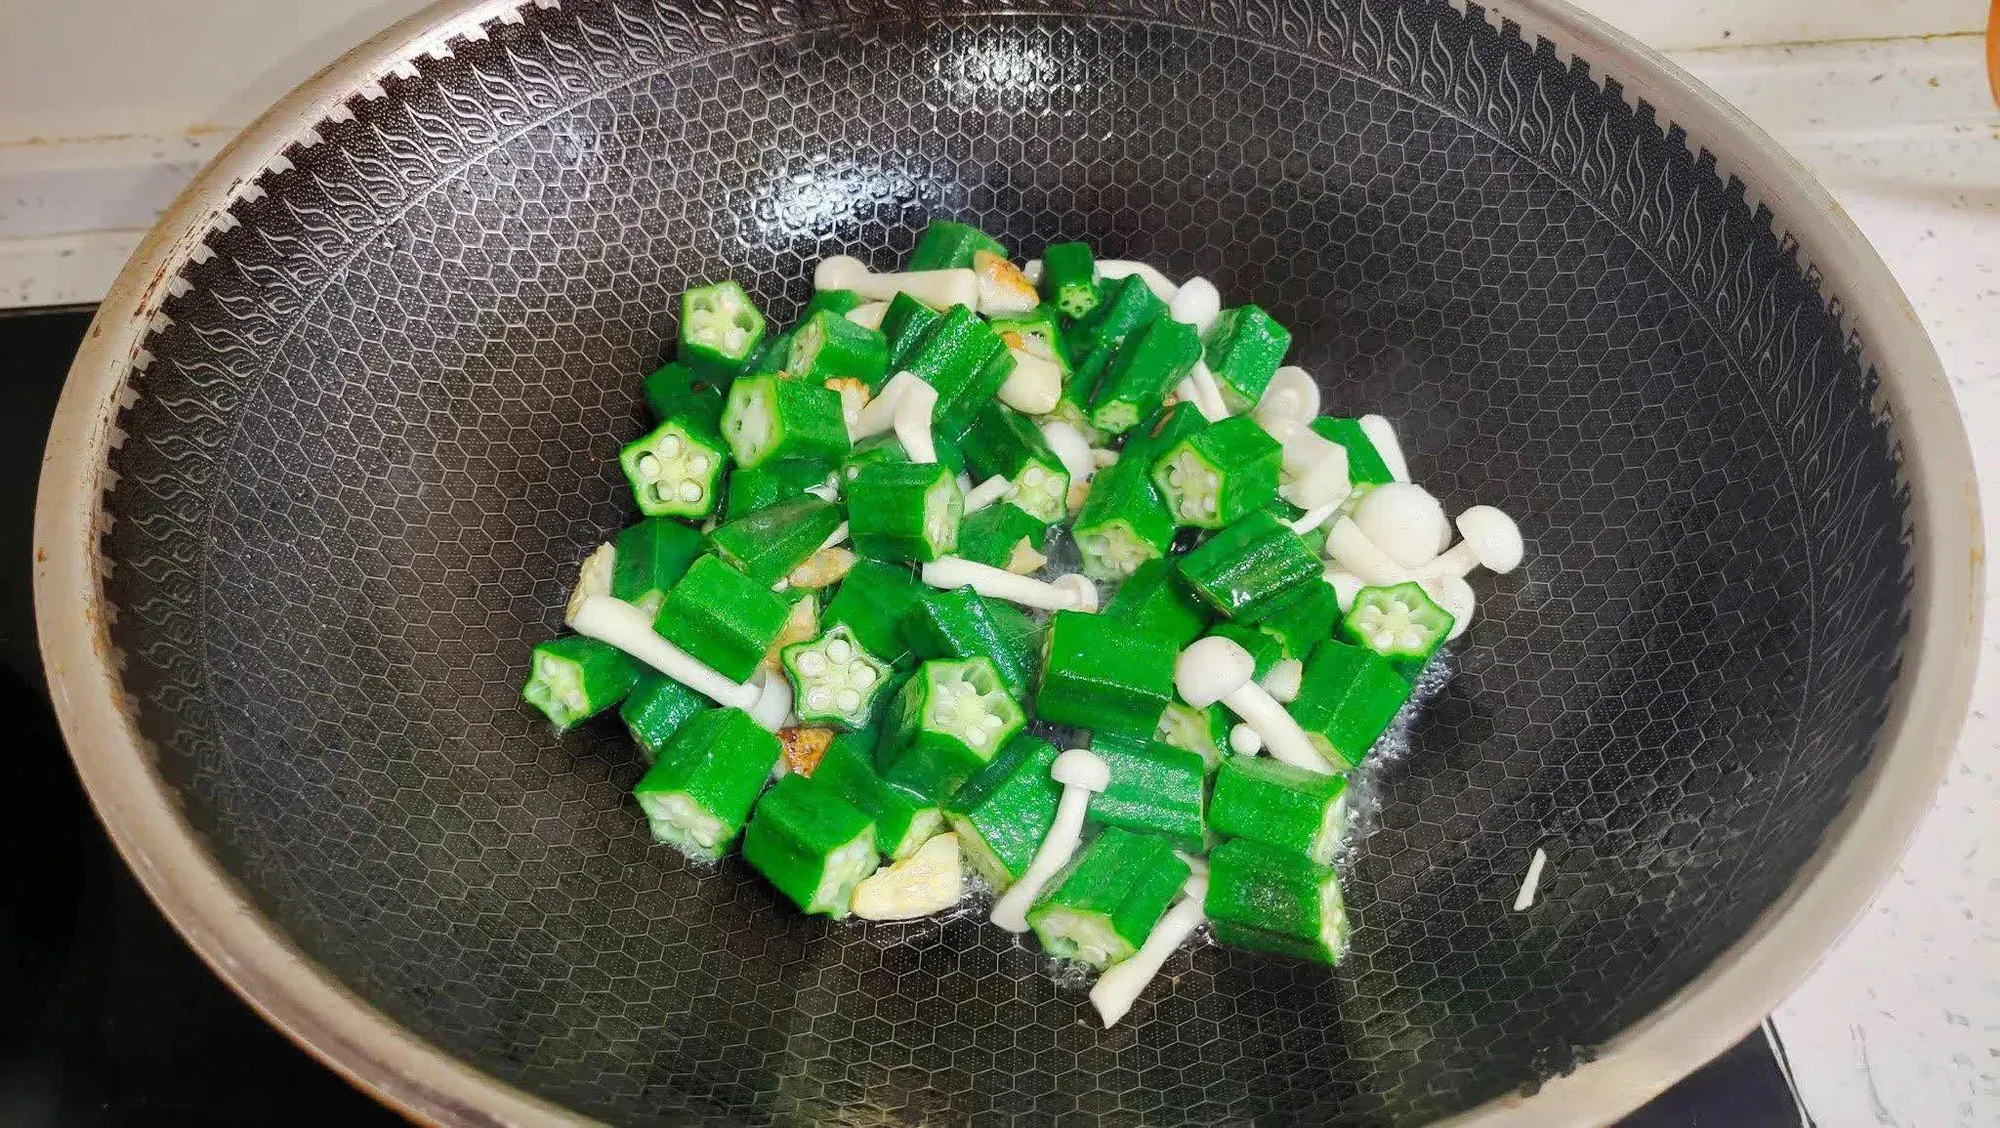 Mệnh danh là “nhân sâm xanh” và có lượng axit folic gấp 15 lần củ cải: Chỉ cần xào đơn giản thế này vừa ngon lại bổ dưỡng